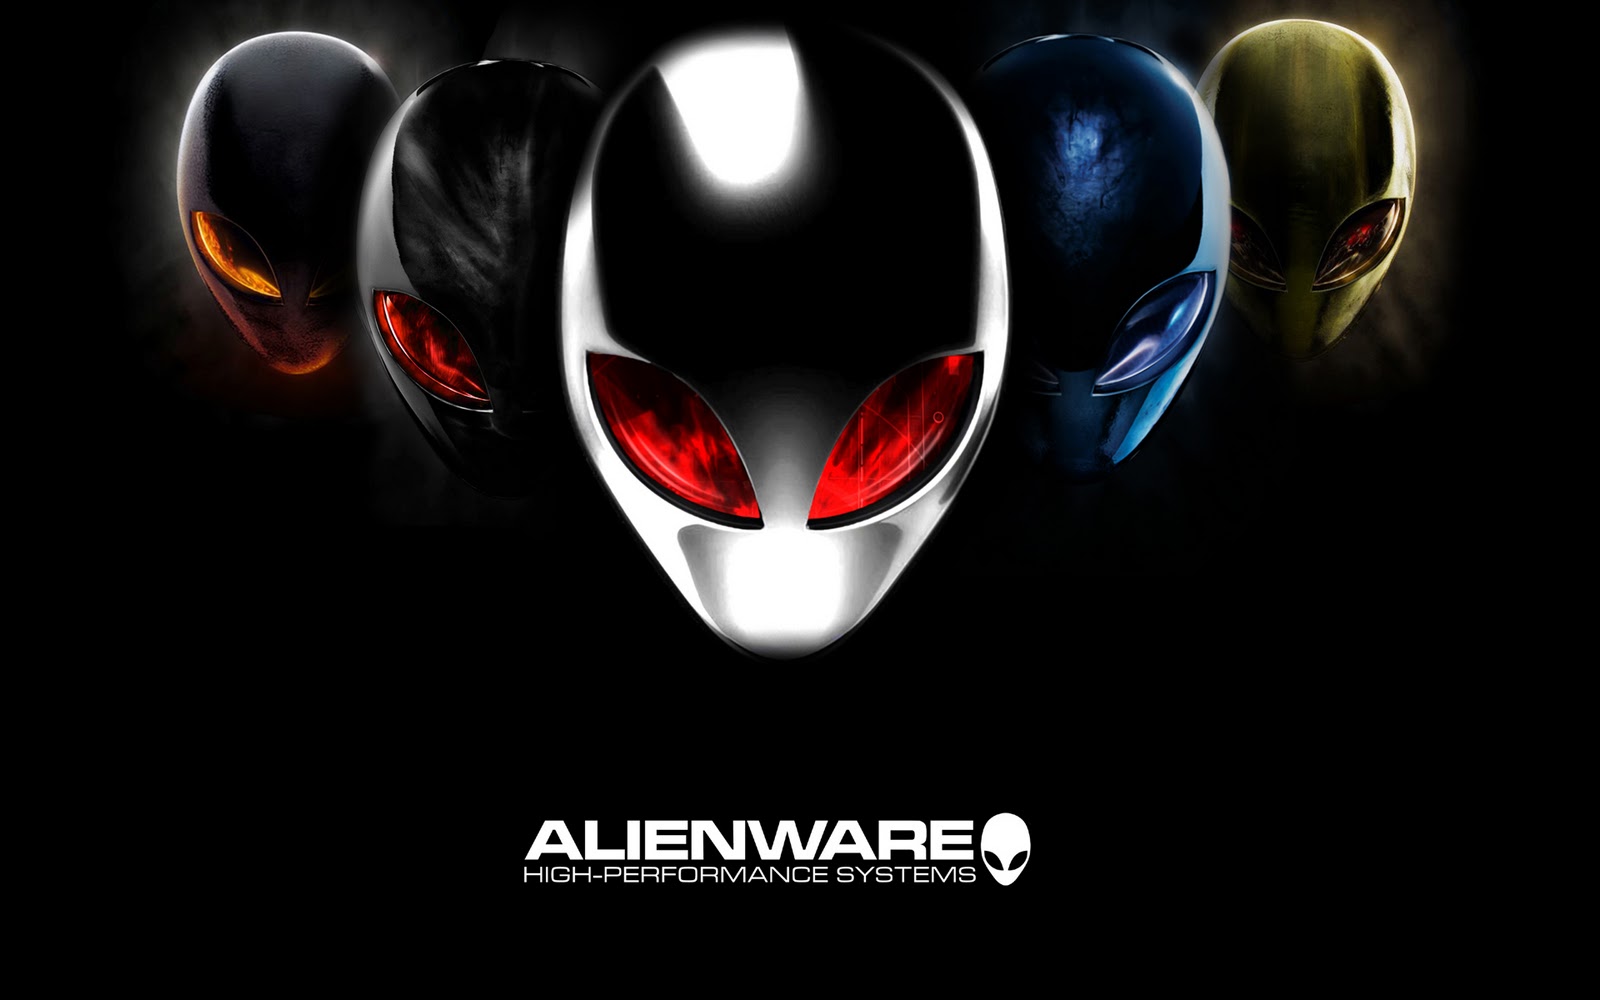 Image Of Alienware Desktop Wallpaper HD Pictures To